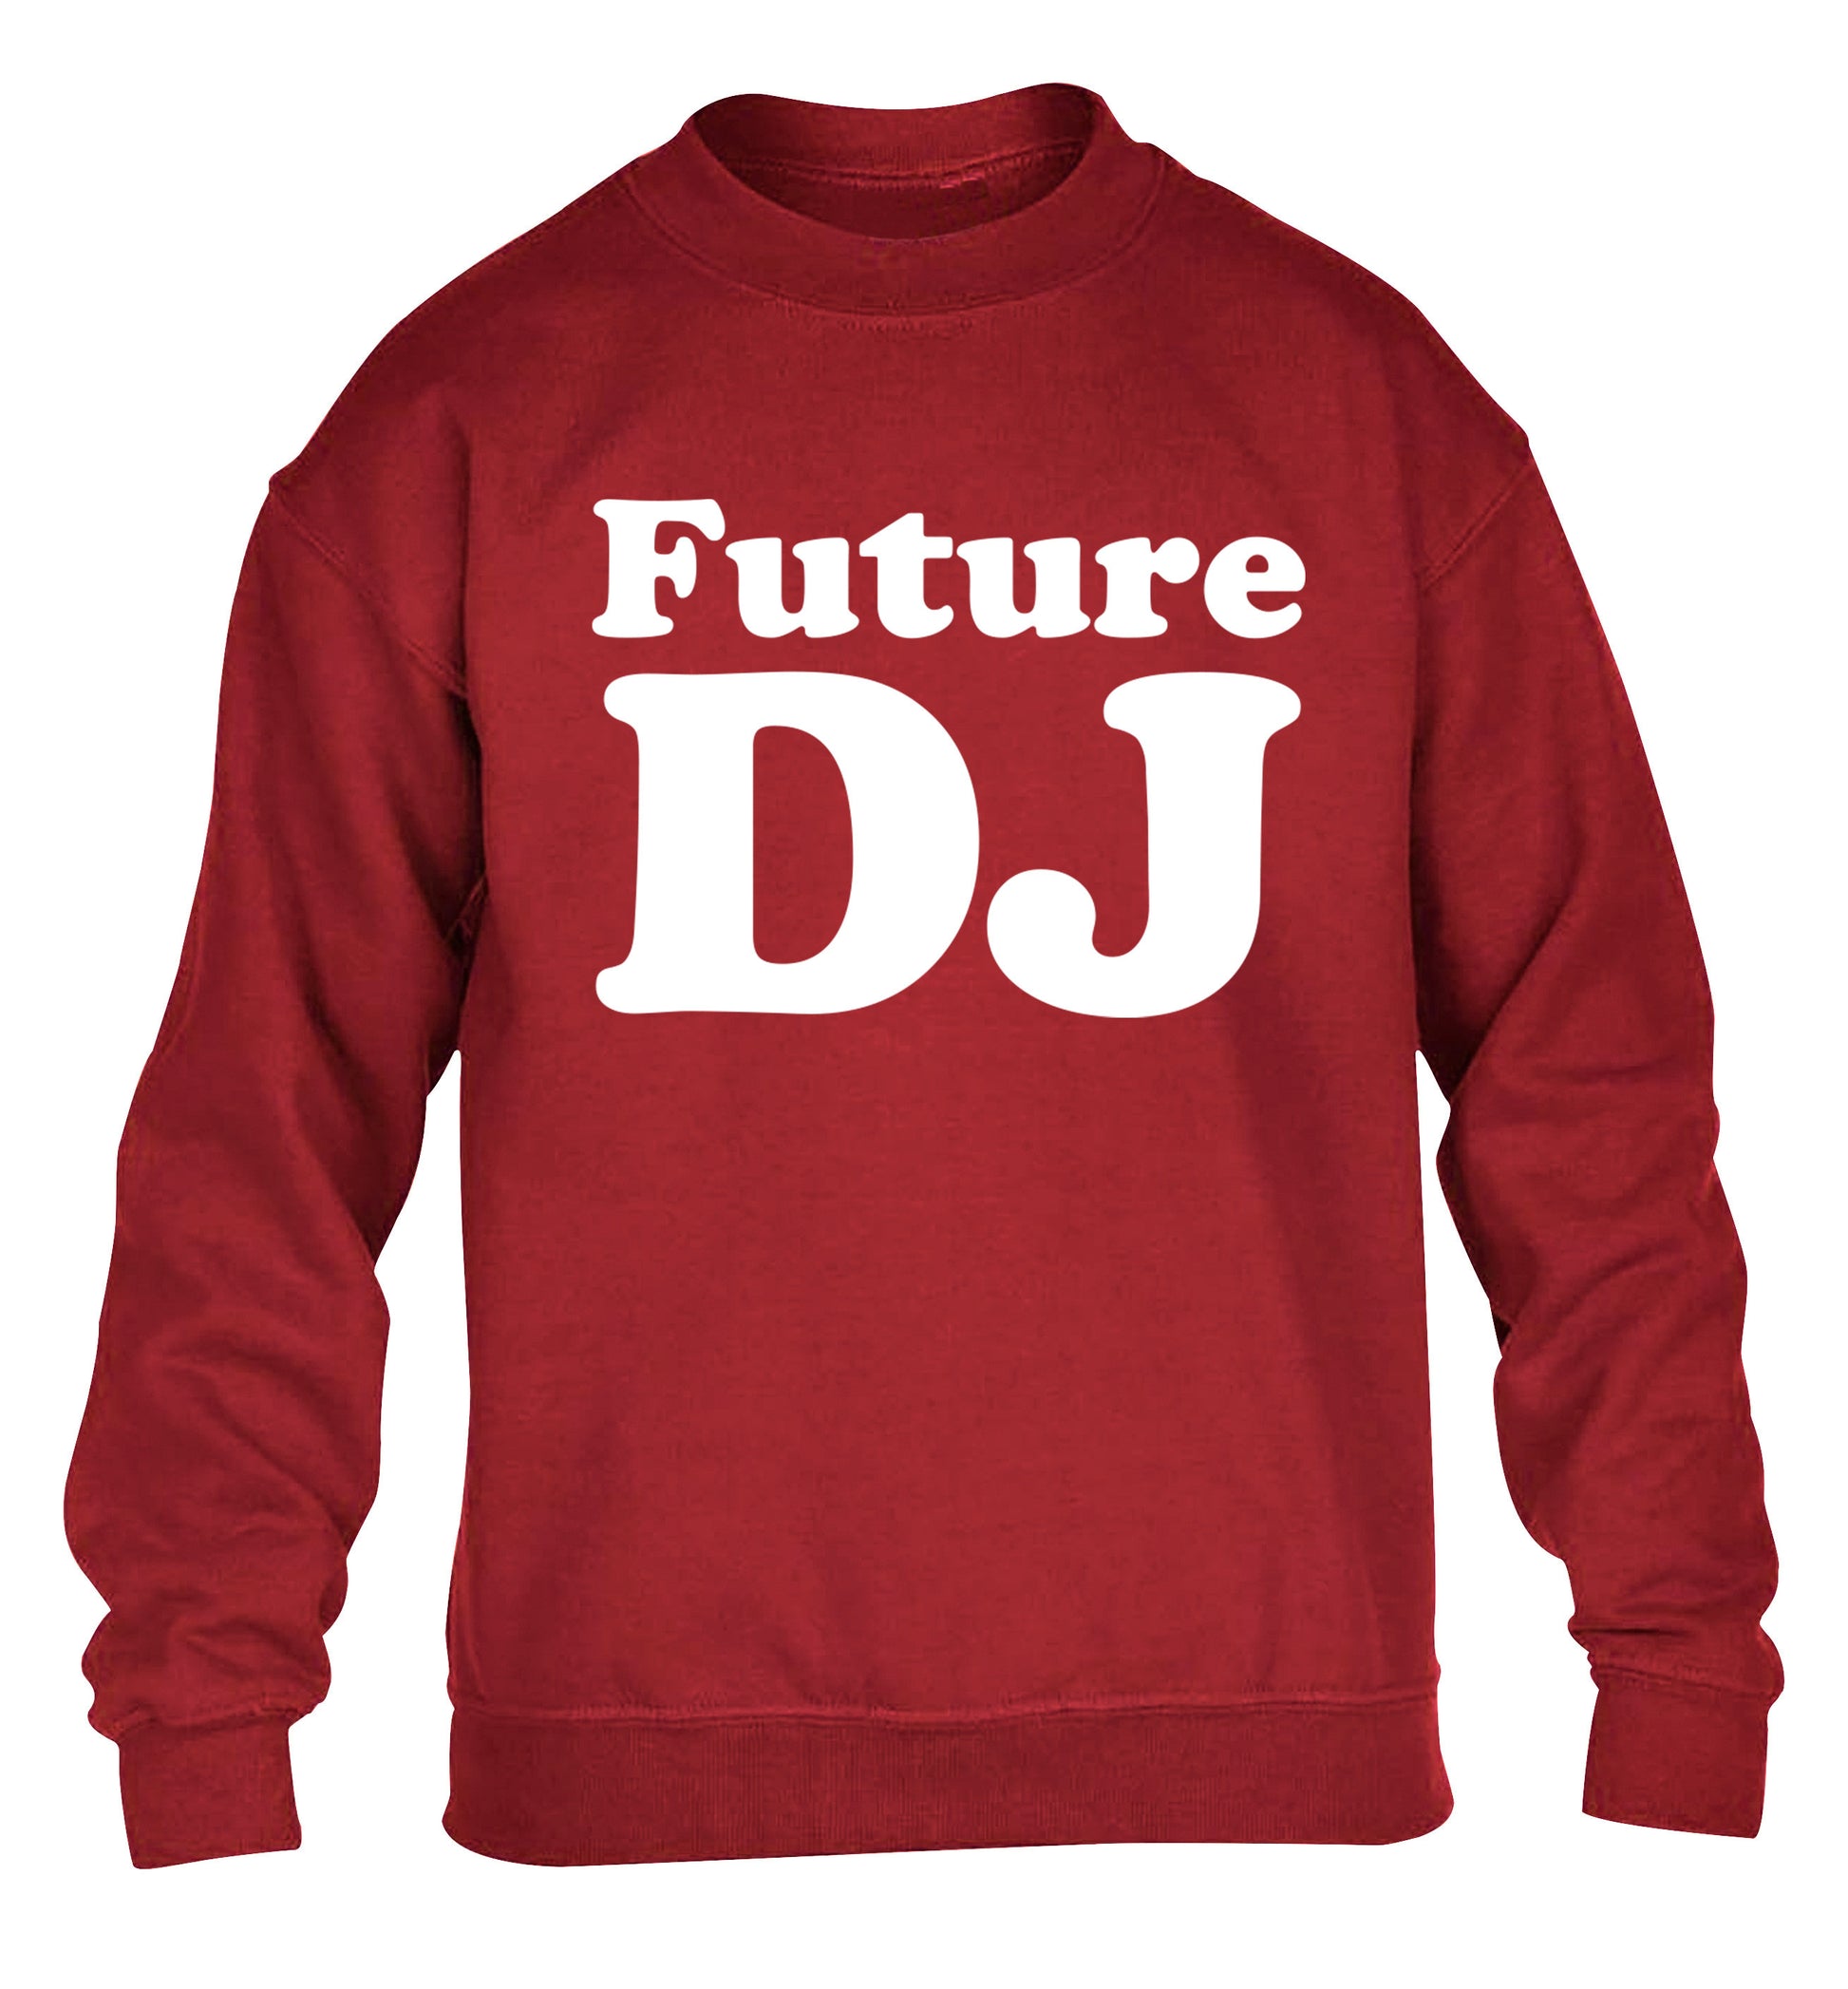 Future DJ children's grey sweater 12-14 Years